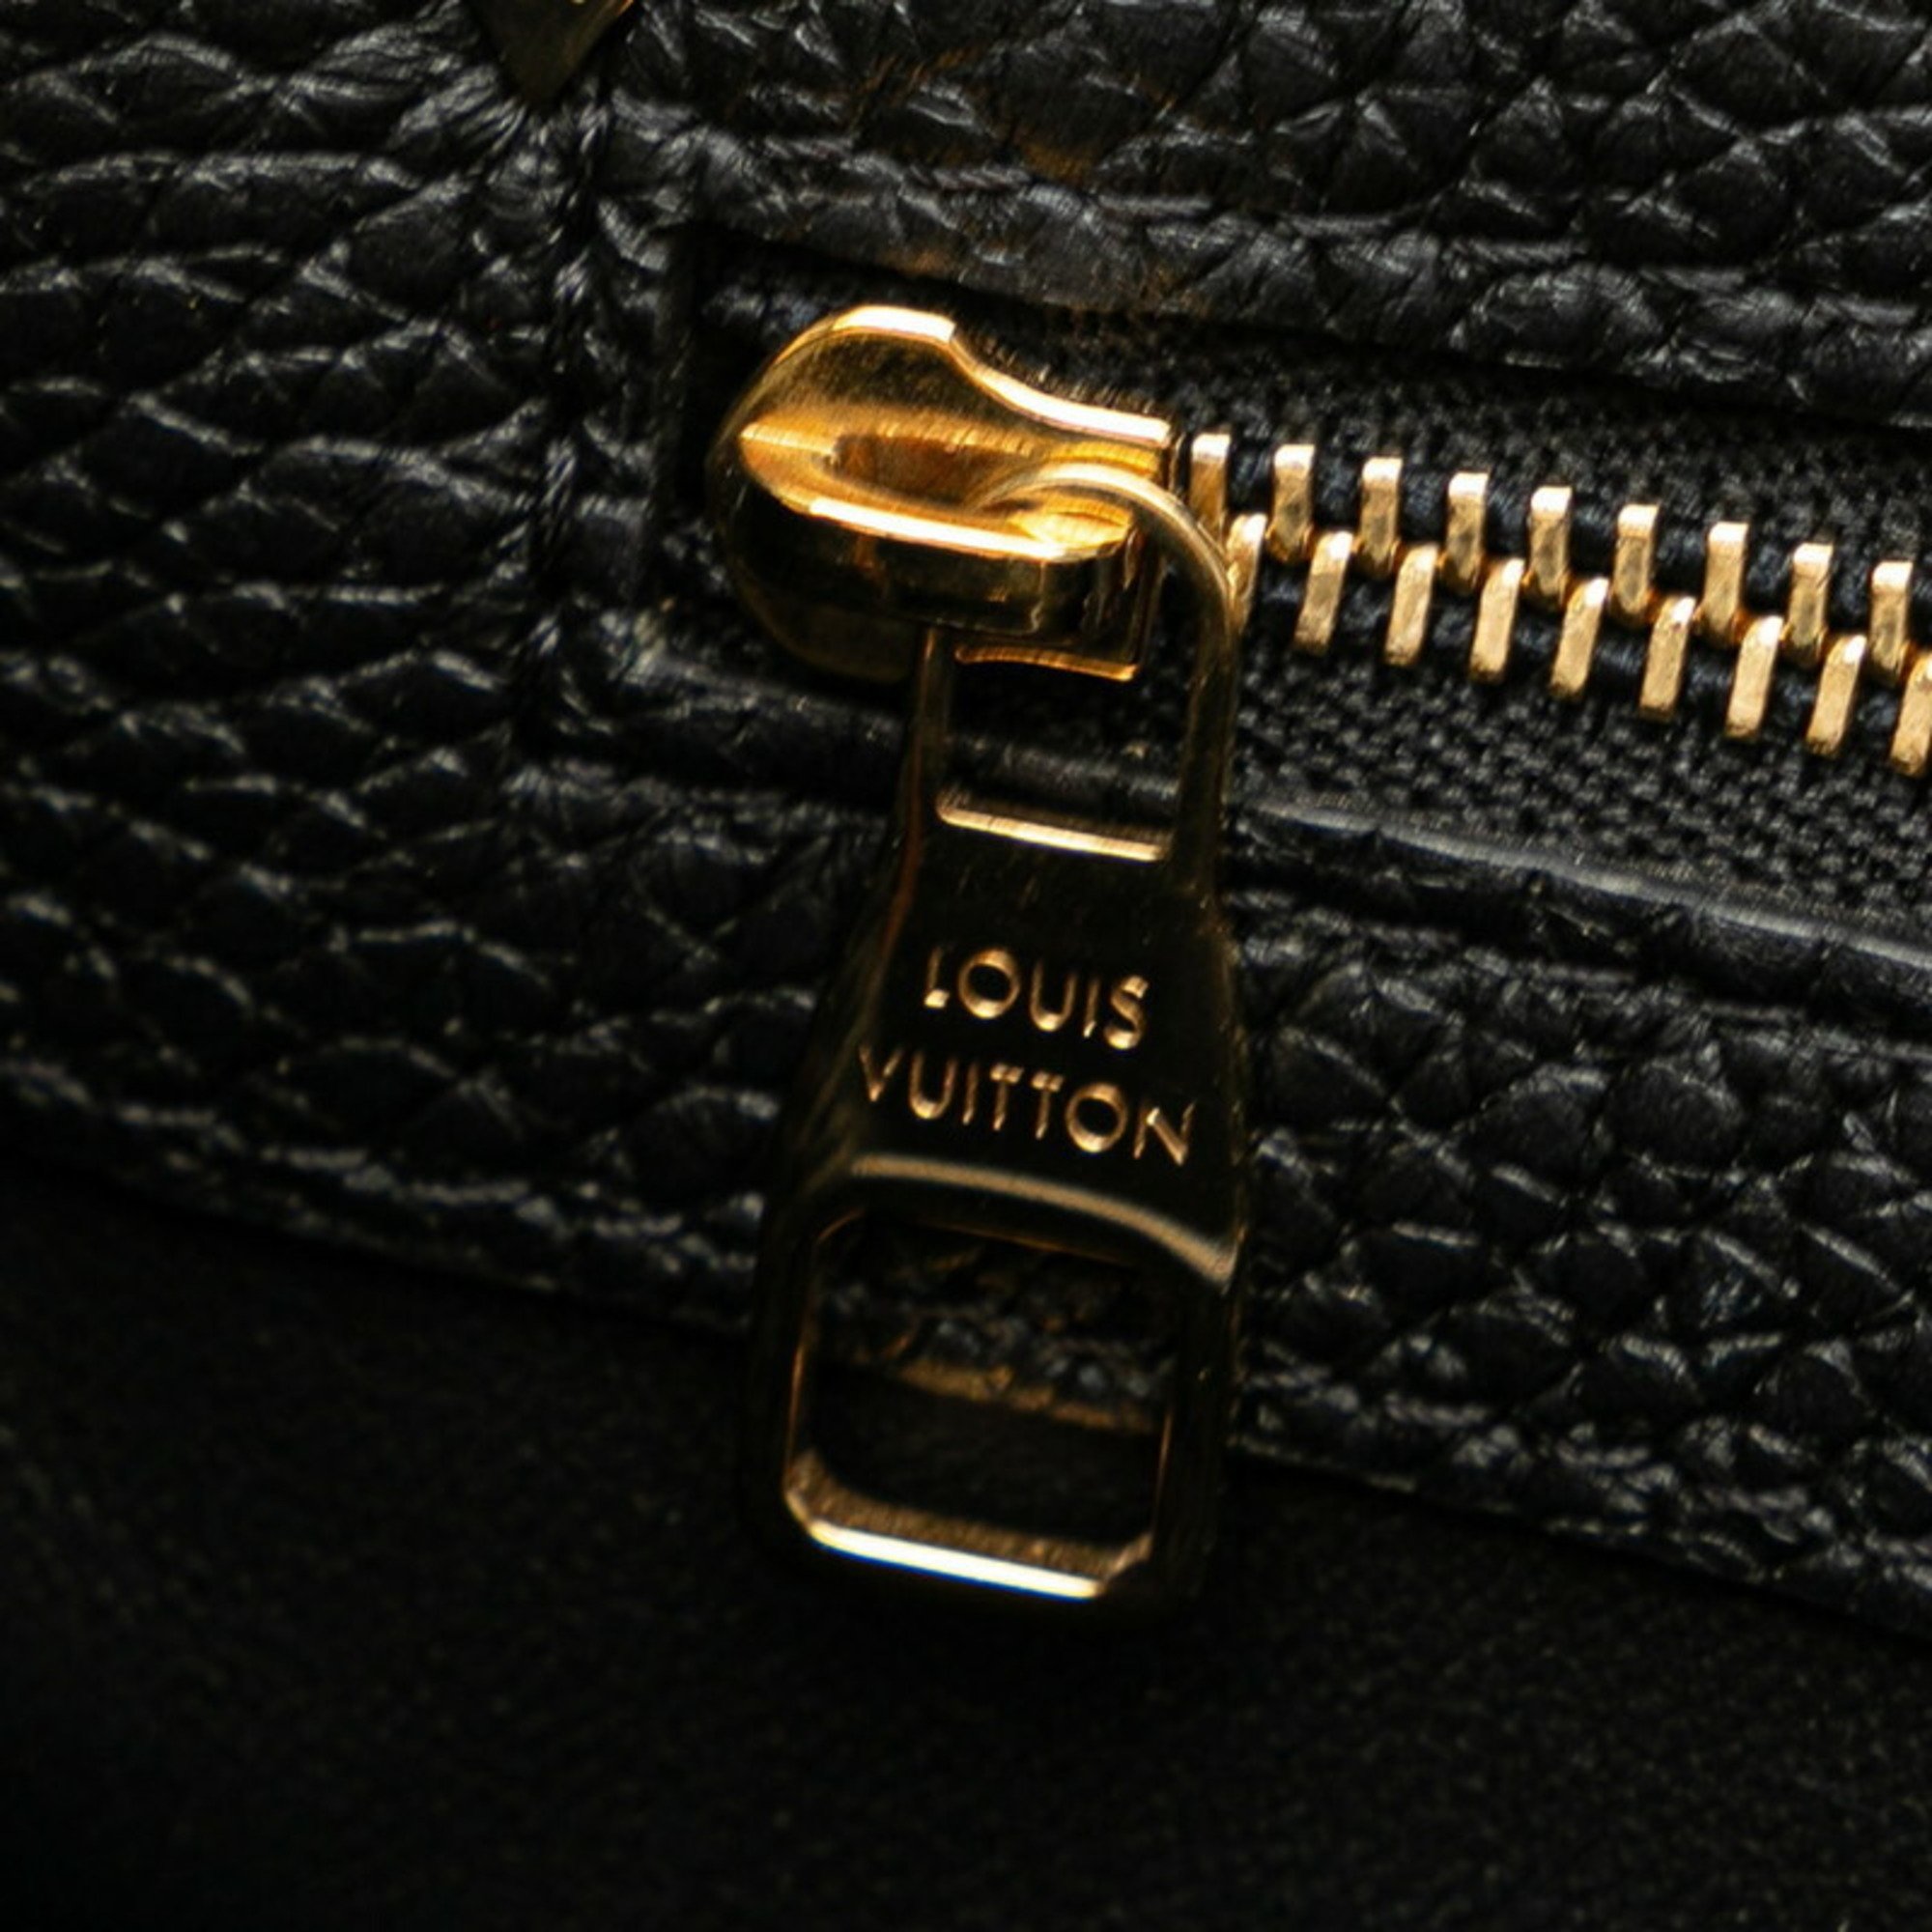 Louis Vuitton Capucines MM Handbag Shoulder Bag M54663 Black Gold Leather Women's LOUIS VUITTON